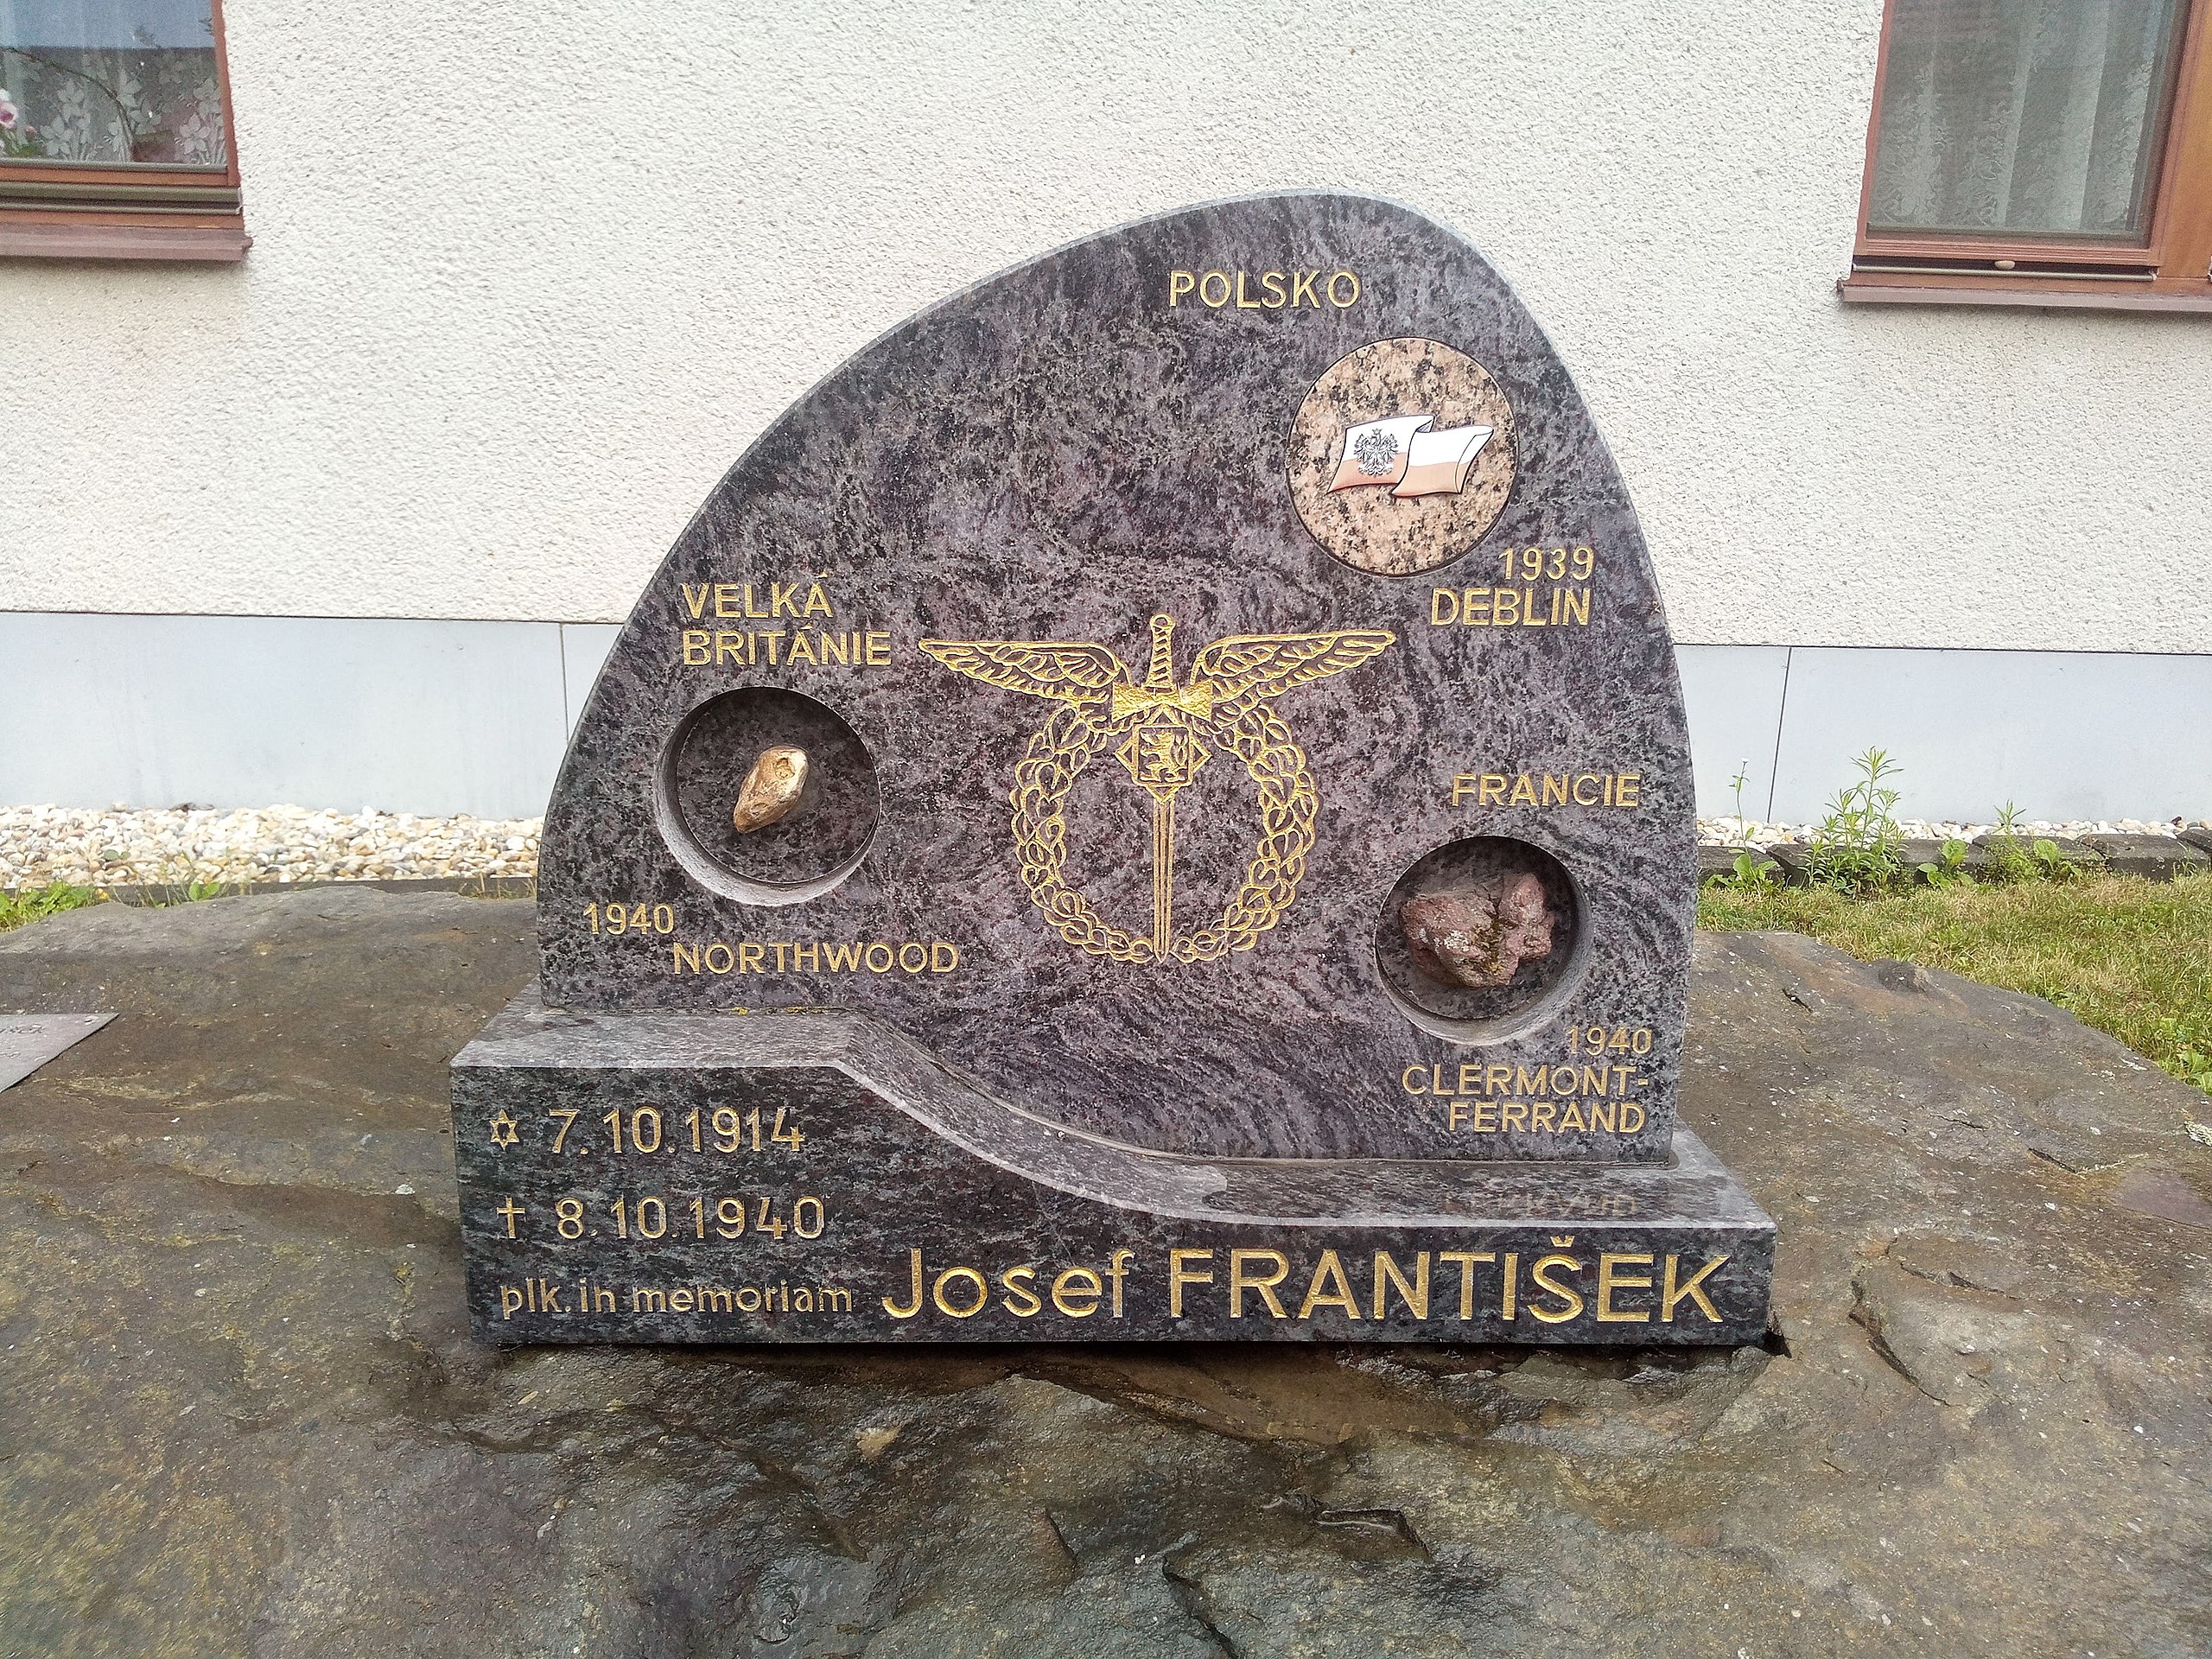 RAF pilot Josef Frantisek memorial stone in Otaslavice, Czechia